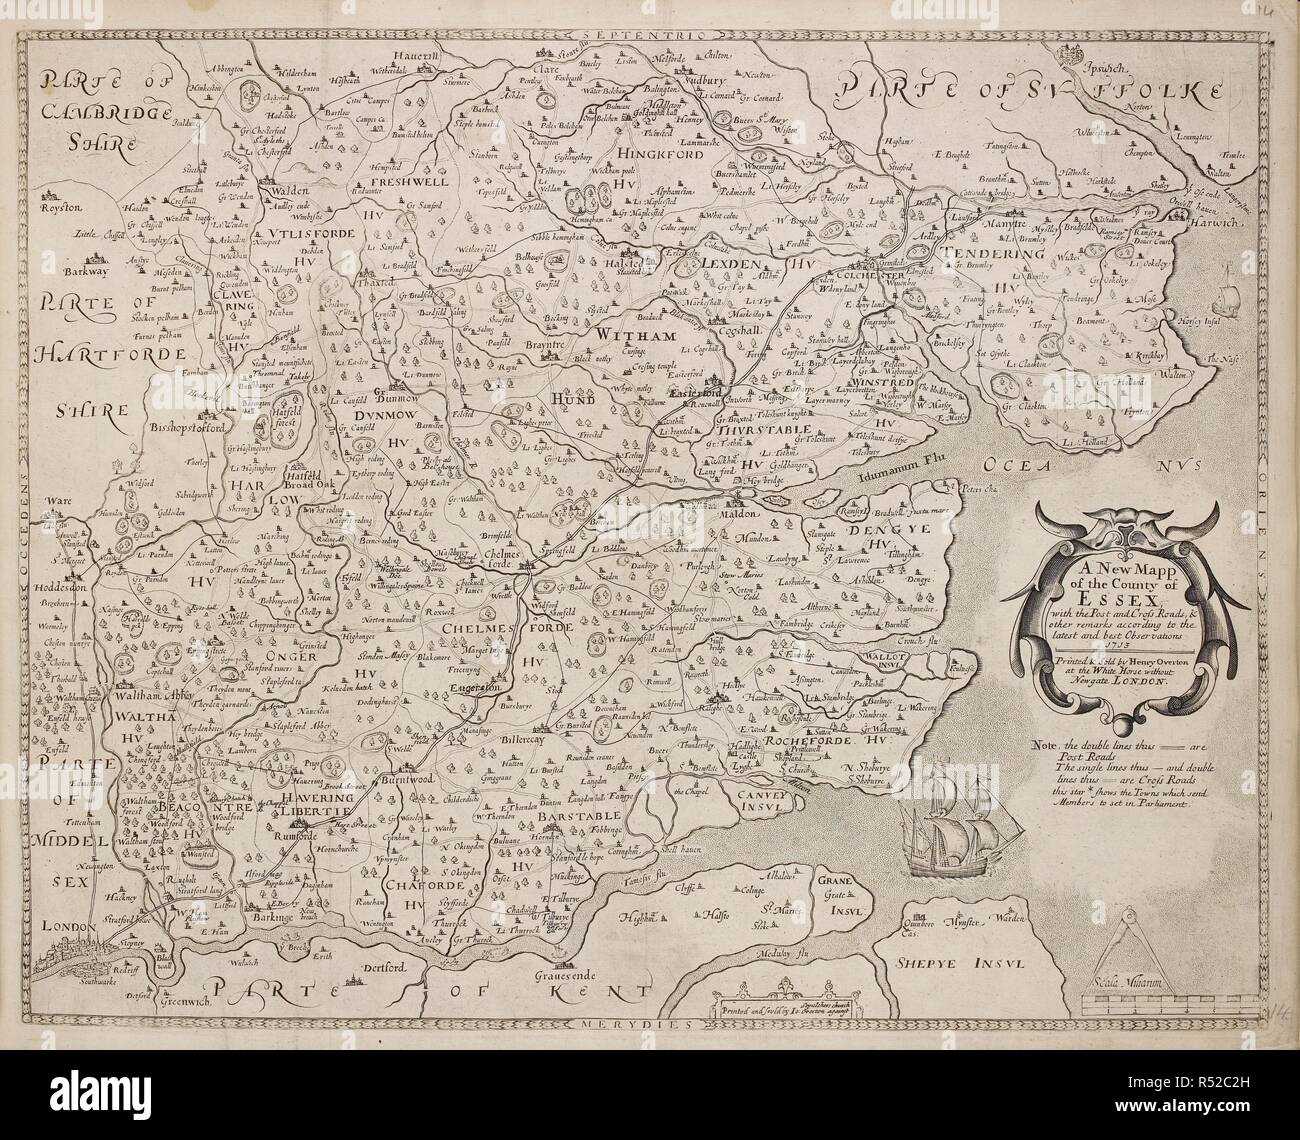 Un mapa del condado de Essex. Una colección de 37 mapas de los condados de Inglaterra. Londres. H. Overton, 1714. Una colección de 37 mapas de los condados de Inglaterra, siendo las reimpresiones, de J. Speedâ€™s mapas, por Henry Overton, junto con los de P. Stent Reimpreso por John Overton, y mapas de Derbyshire y Yorkshire grabado por S. Nicholls. Fuente: Maps.145.c.9 14. Idioma: Inglés. Foto de stock